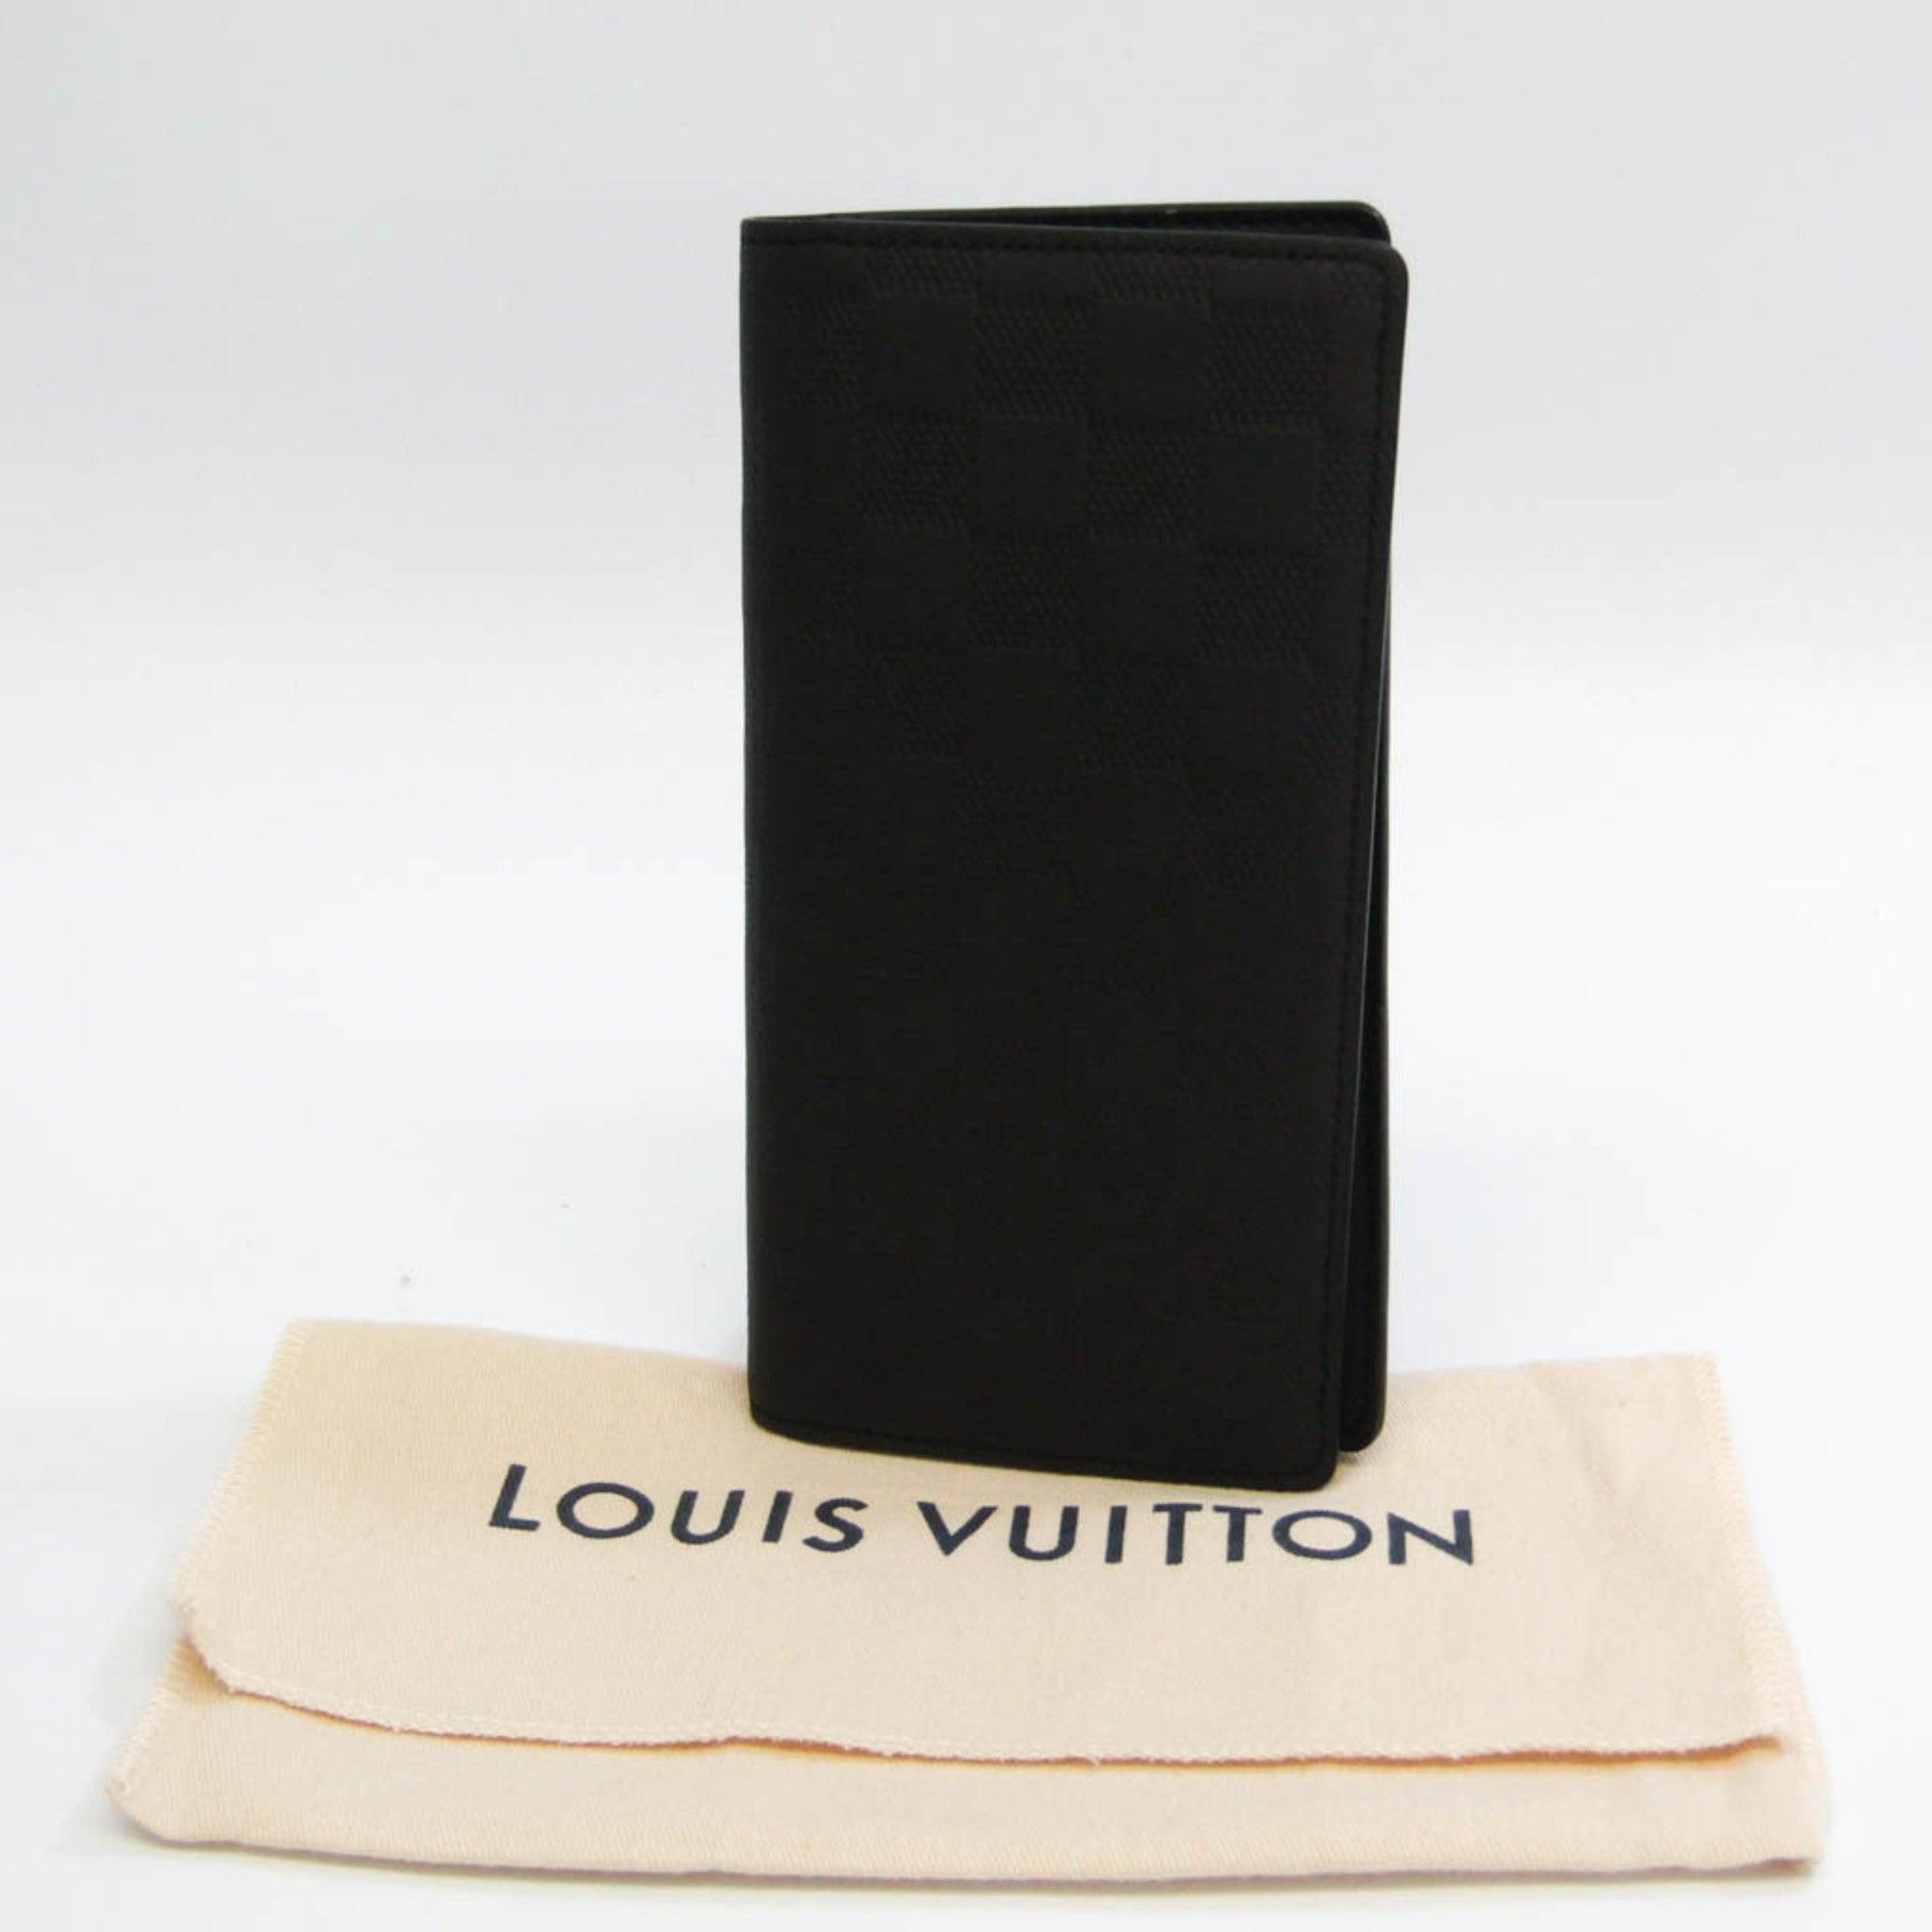 Authentic Louis Vuitton Damier Infini Brazza Wallet